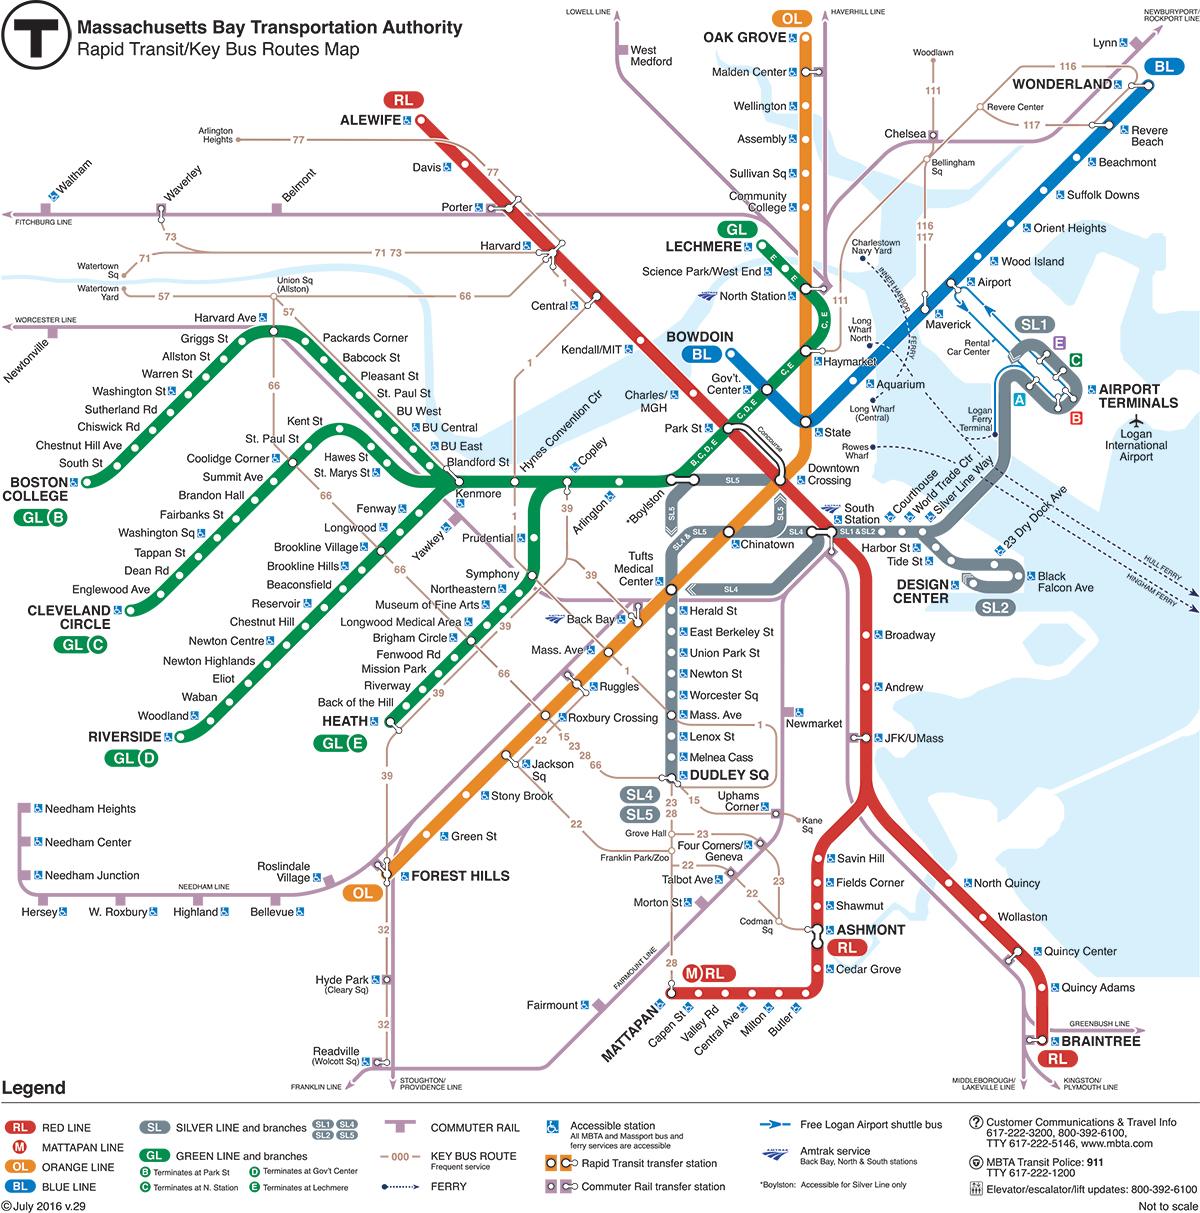 波士顿绿线——以地铁模式运营的有轨电车 - 知乎